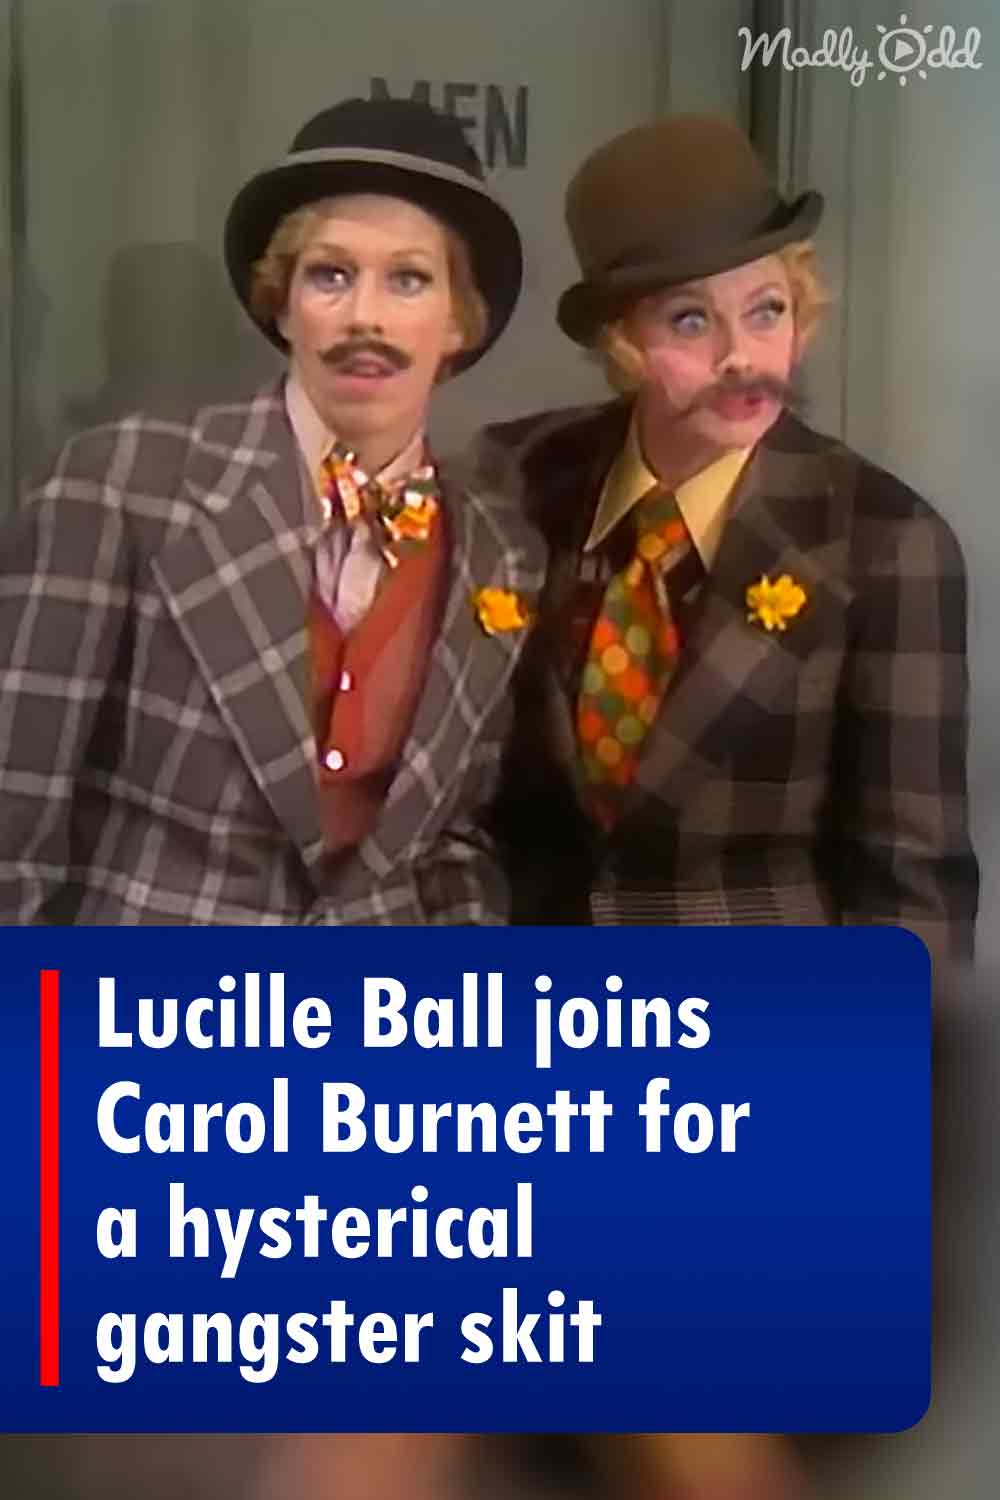 Lucille Ball joins Carol Burnett for a hysterical gangster skit